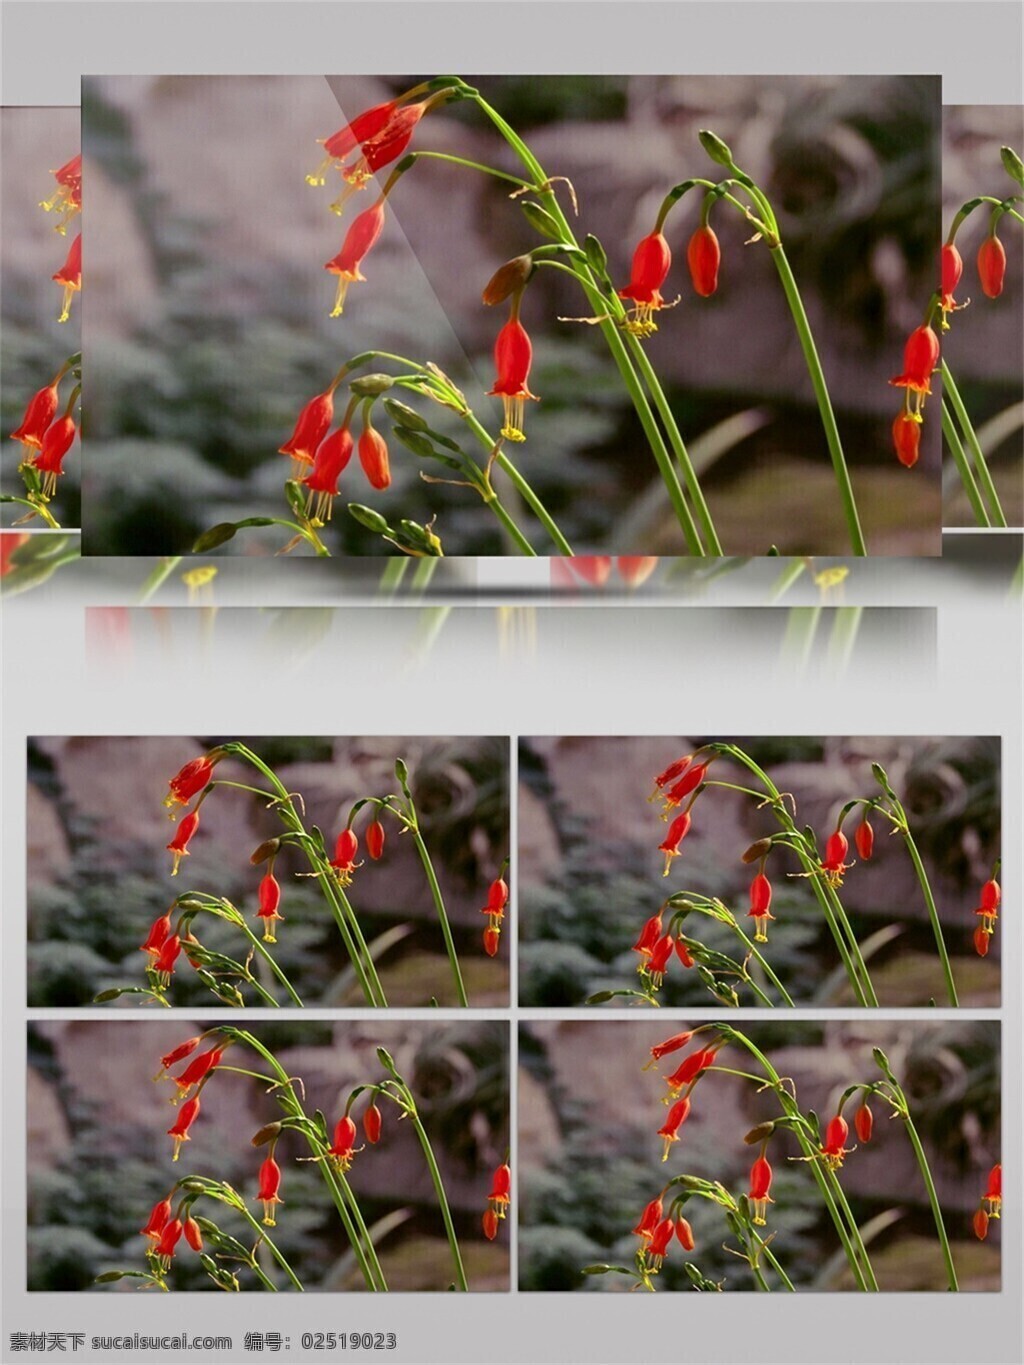 吊兰 花开 视频 音效 红色 植物 花卉 绿色 唯美 视频素材 视频音效